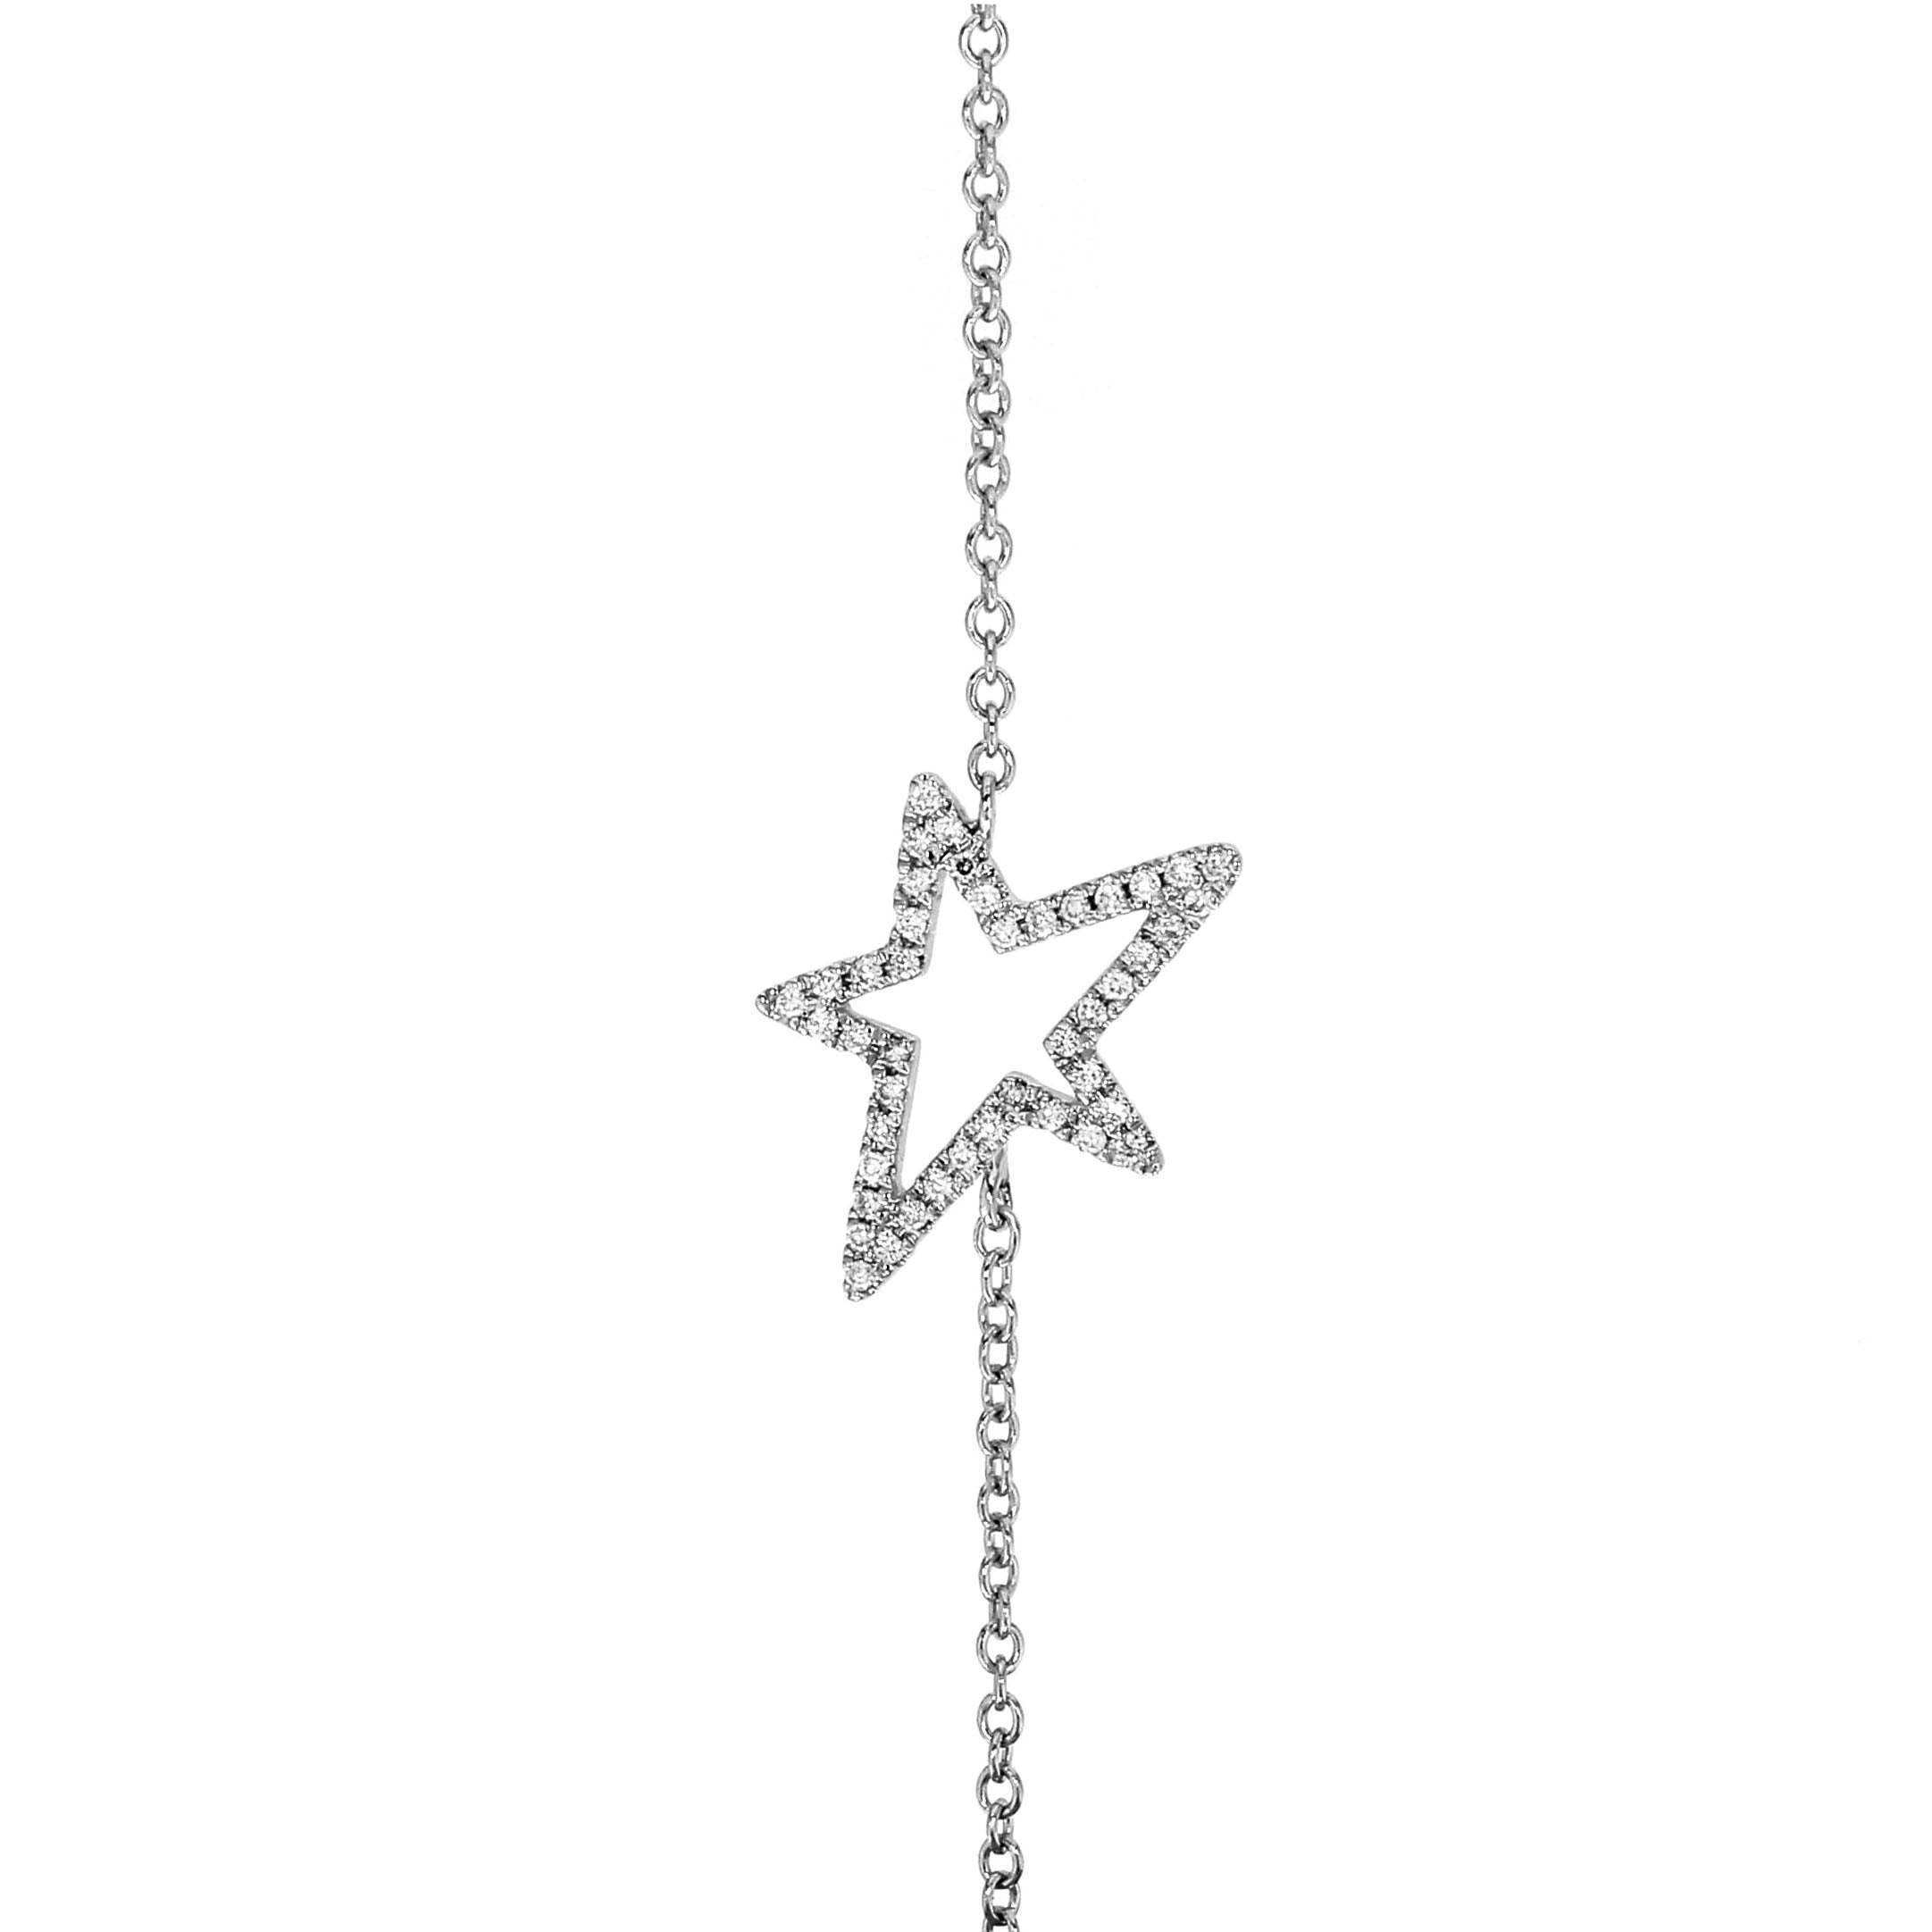 Adamar Jewels LUZ Mito Bracelet in 18K white gold set with diamonds